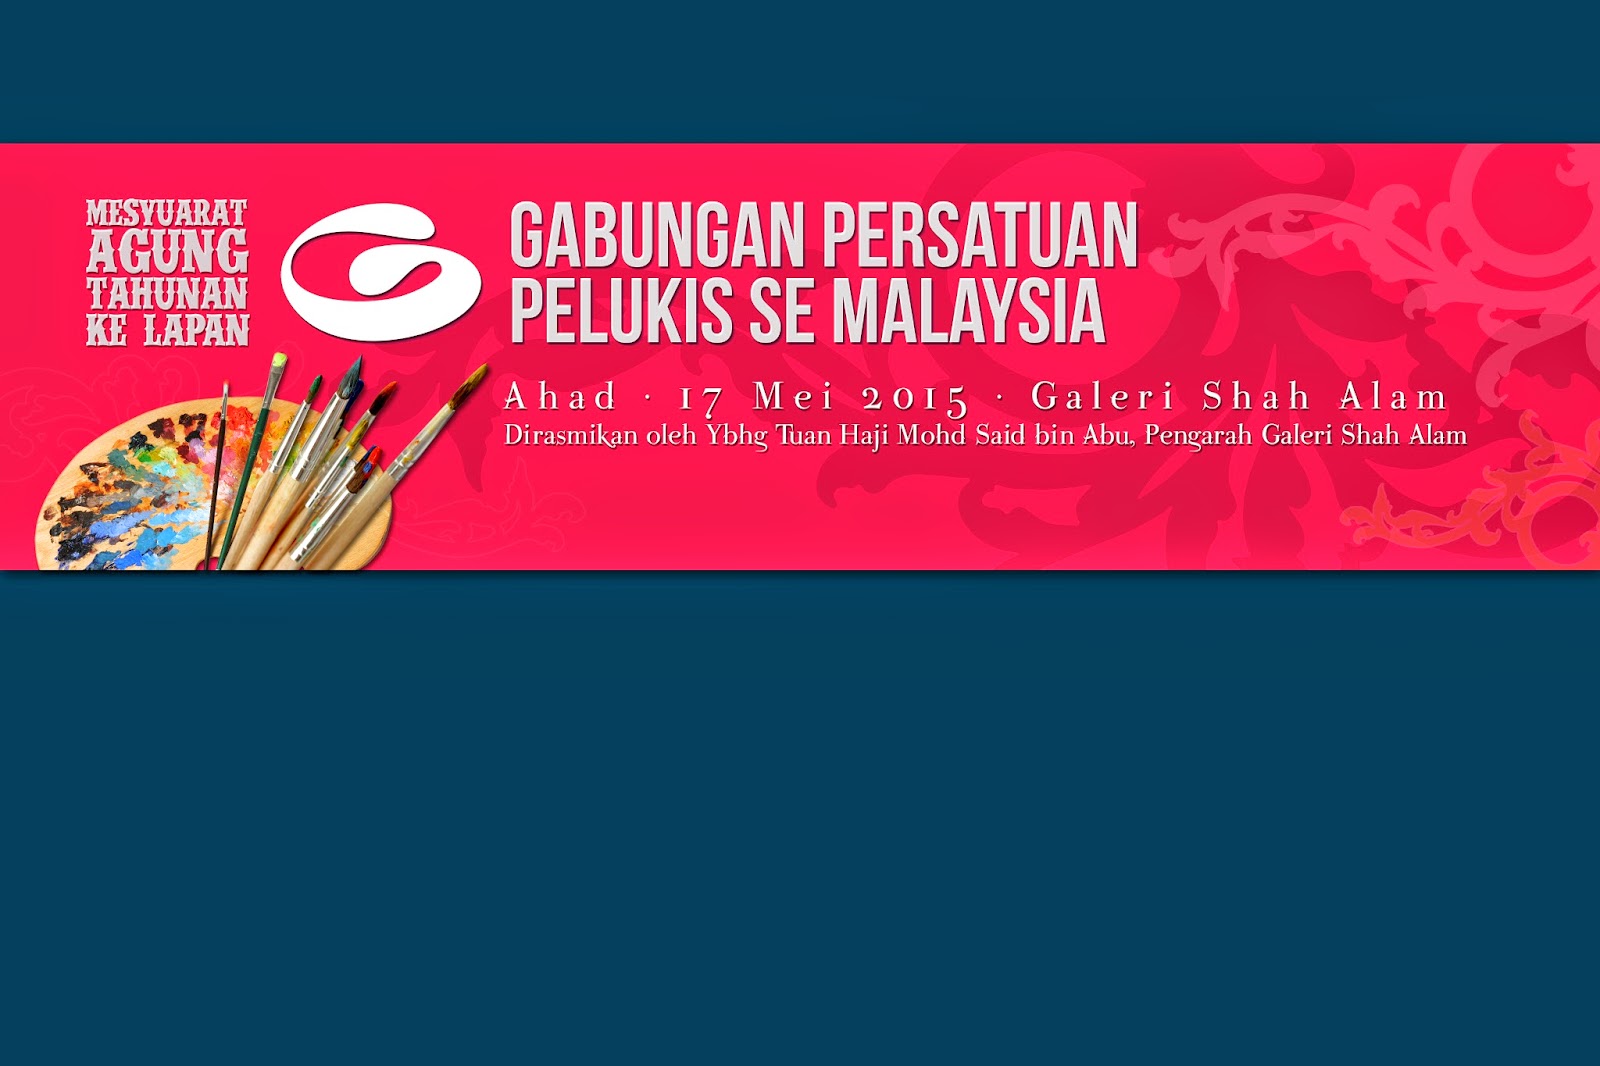 Gabungan Persatuan Pelukis Se Malaysia: MESYUARAT AGUNG 